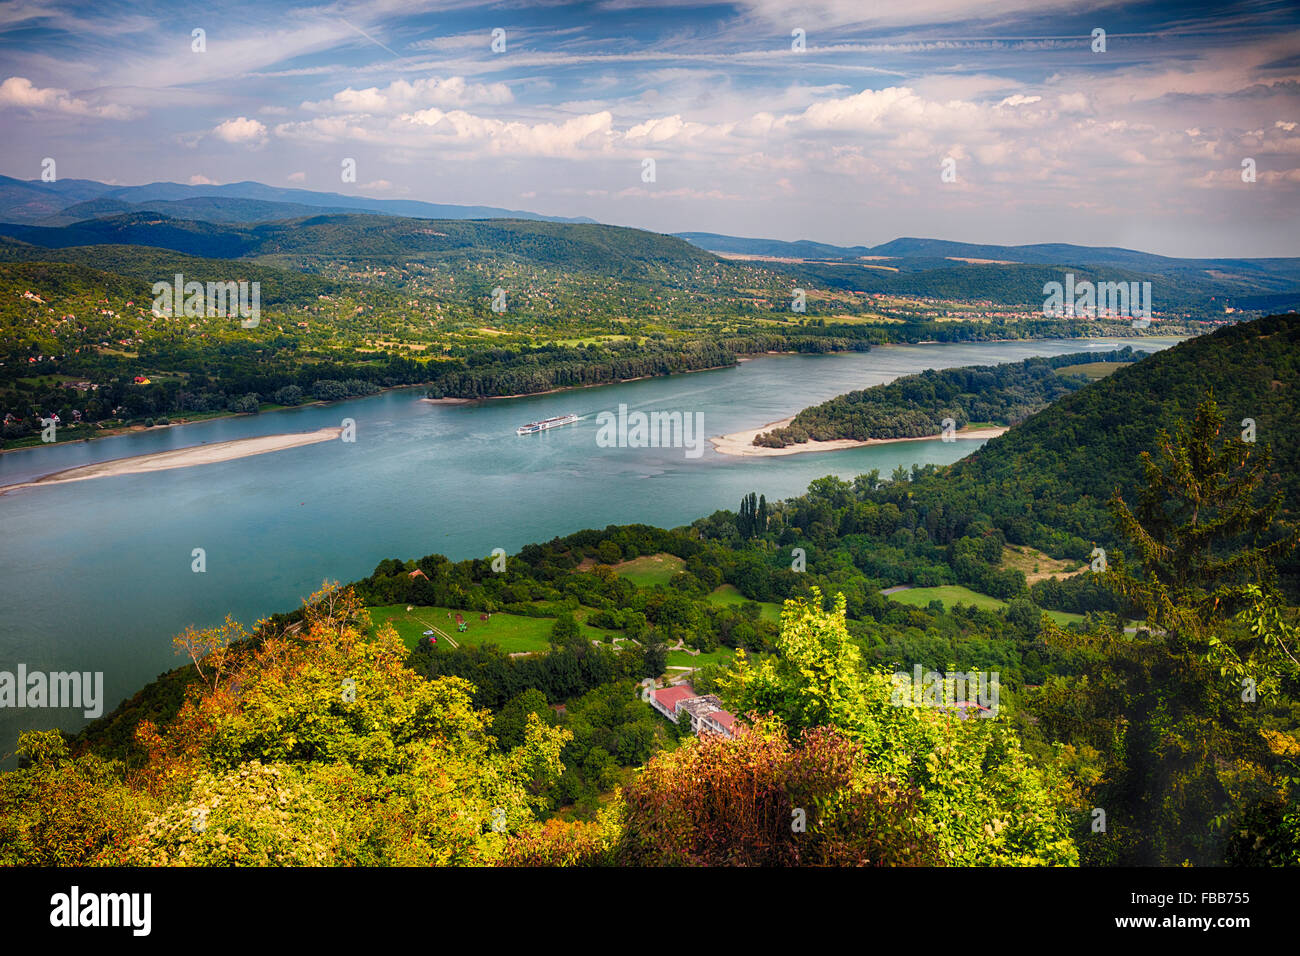 Un alto ángulo de vista del río Danubio con islas y un crucero, Visegrad, el condado Pest, Hungría Foto de stock